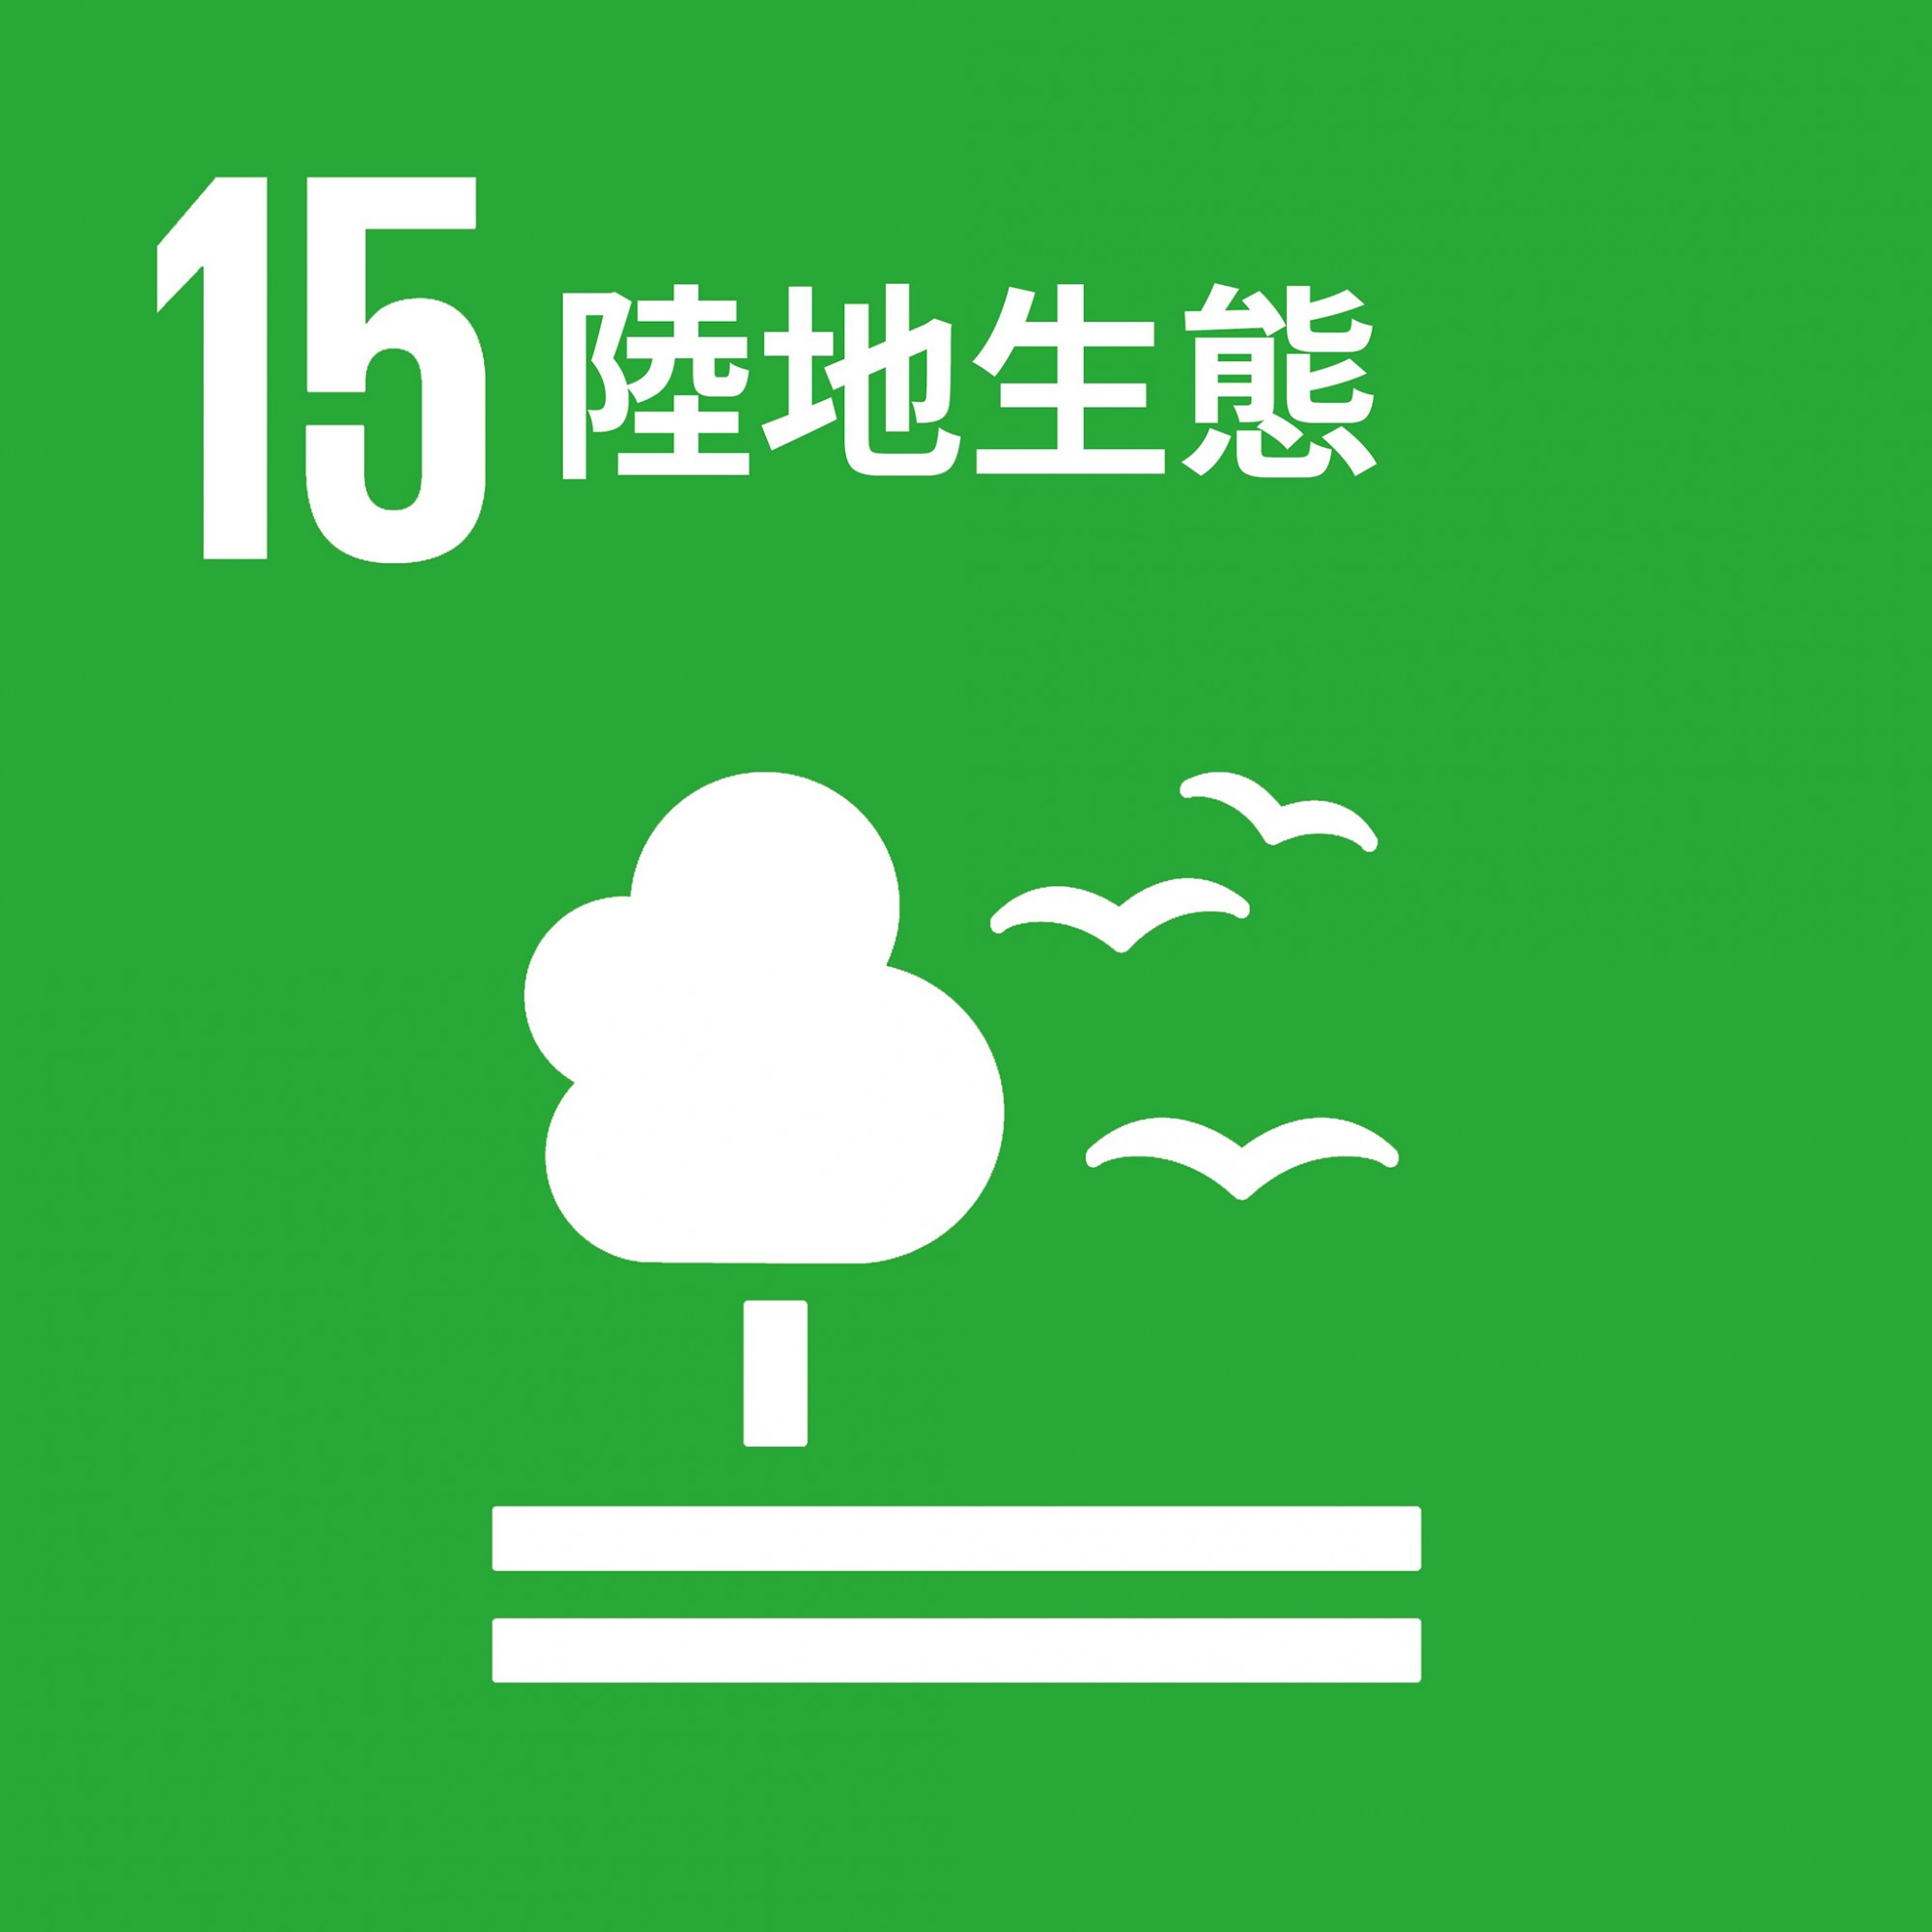 SDG 15.jpeg